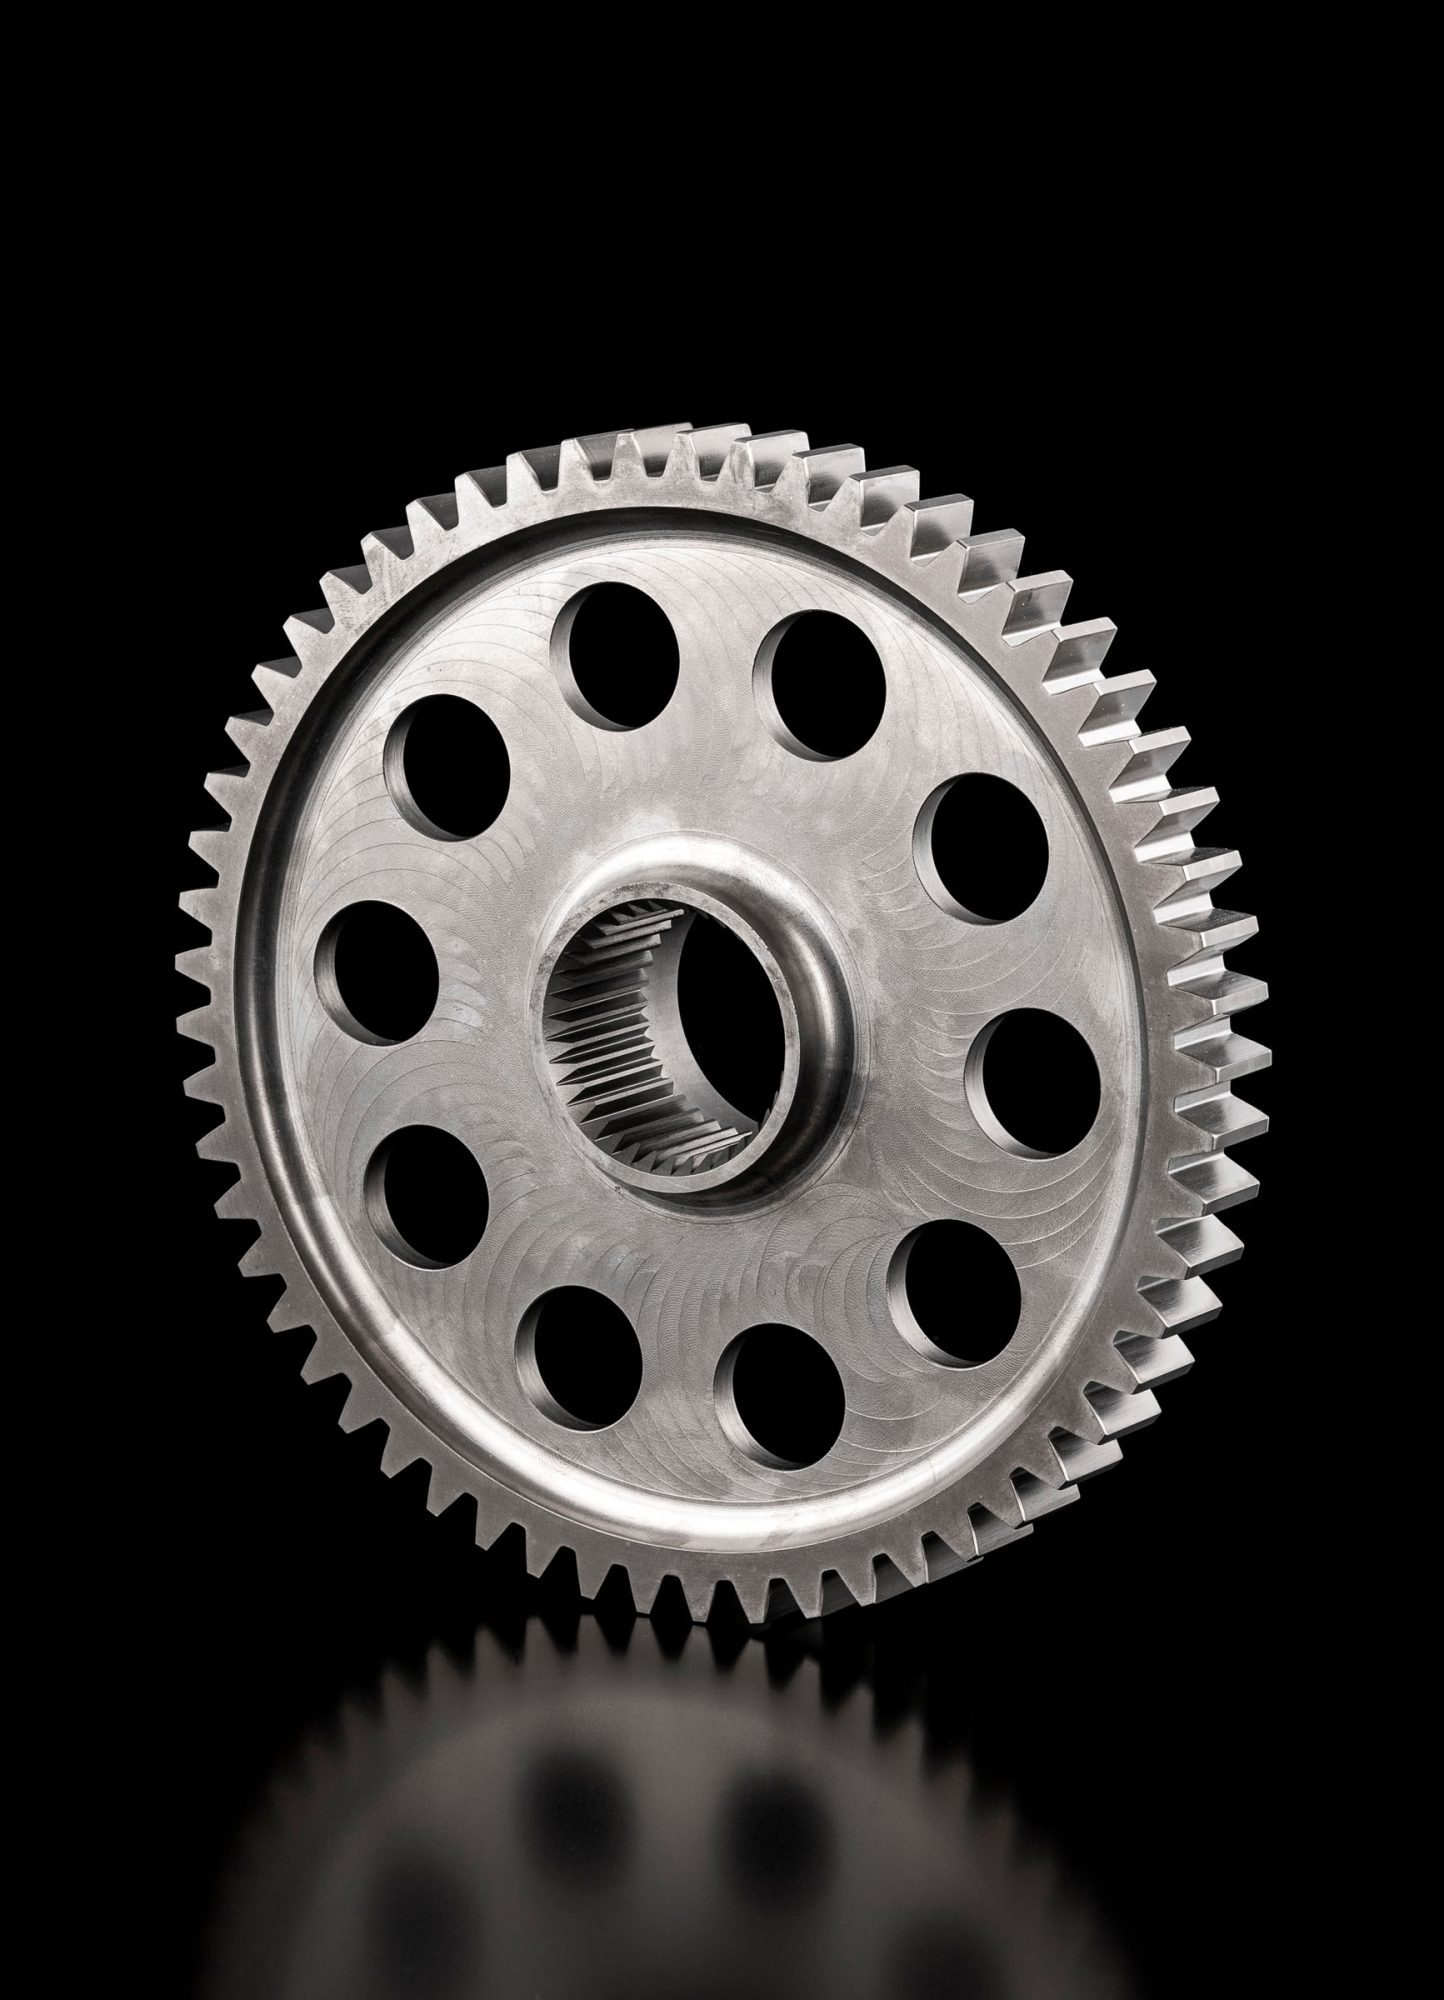 Gear wheel made from steel for motorsport